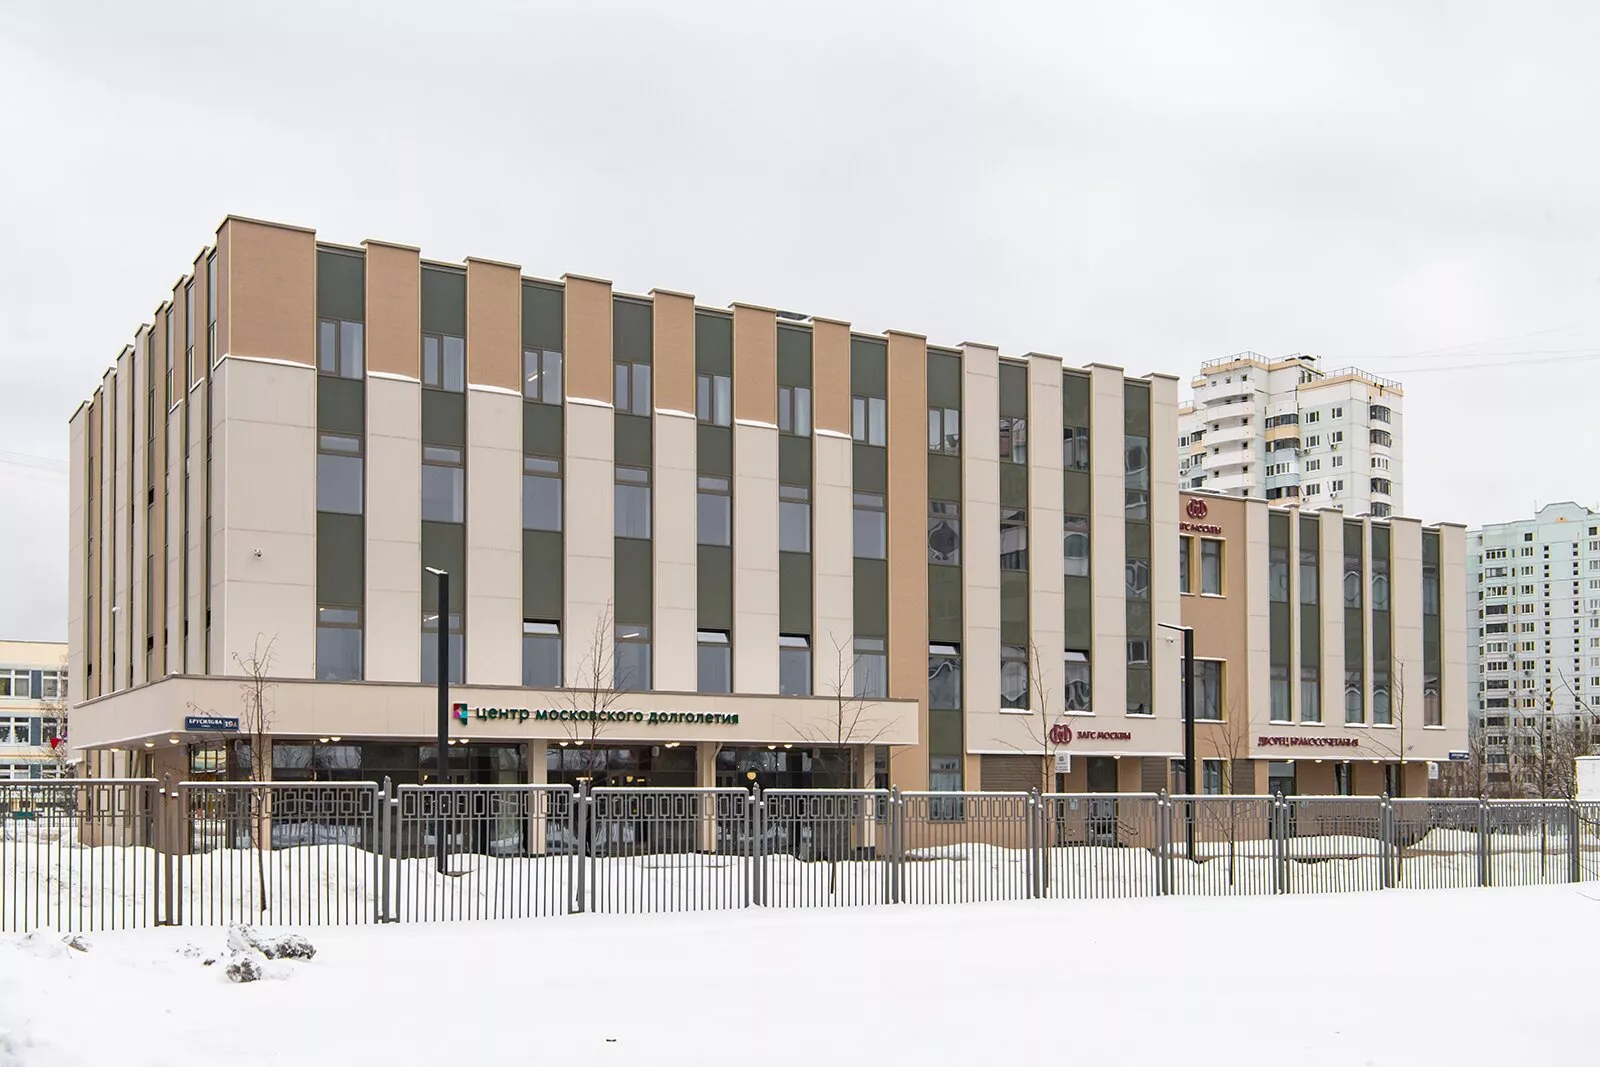 Пенсионеры смогут пройти компьютерную психологическую диагностику в центре московского долголетия в Южном Бутово, фото